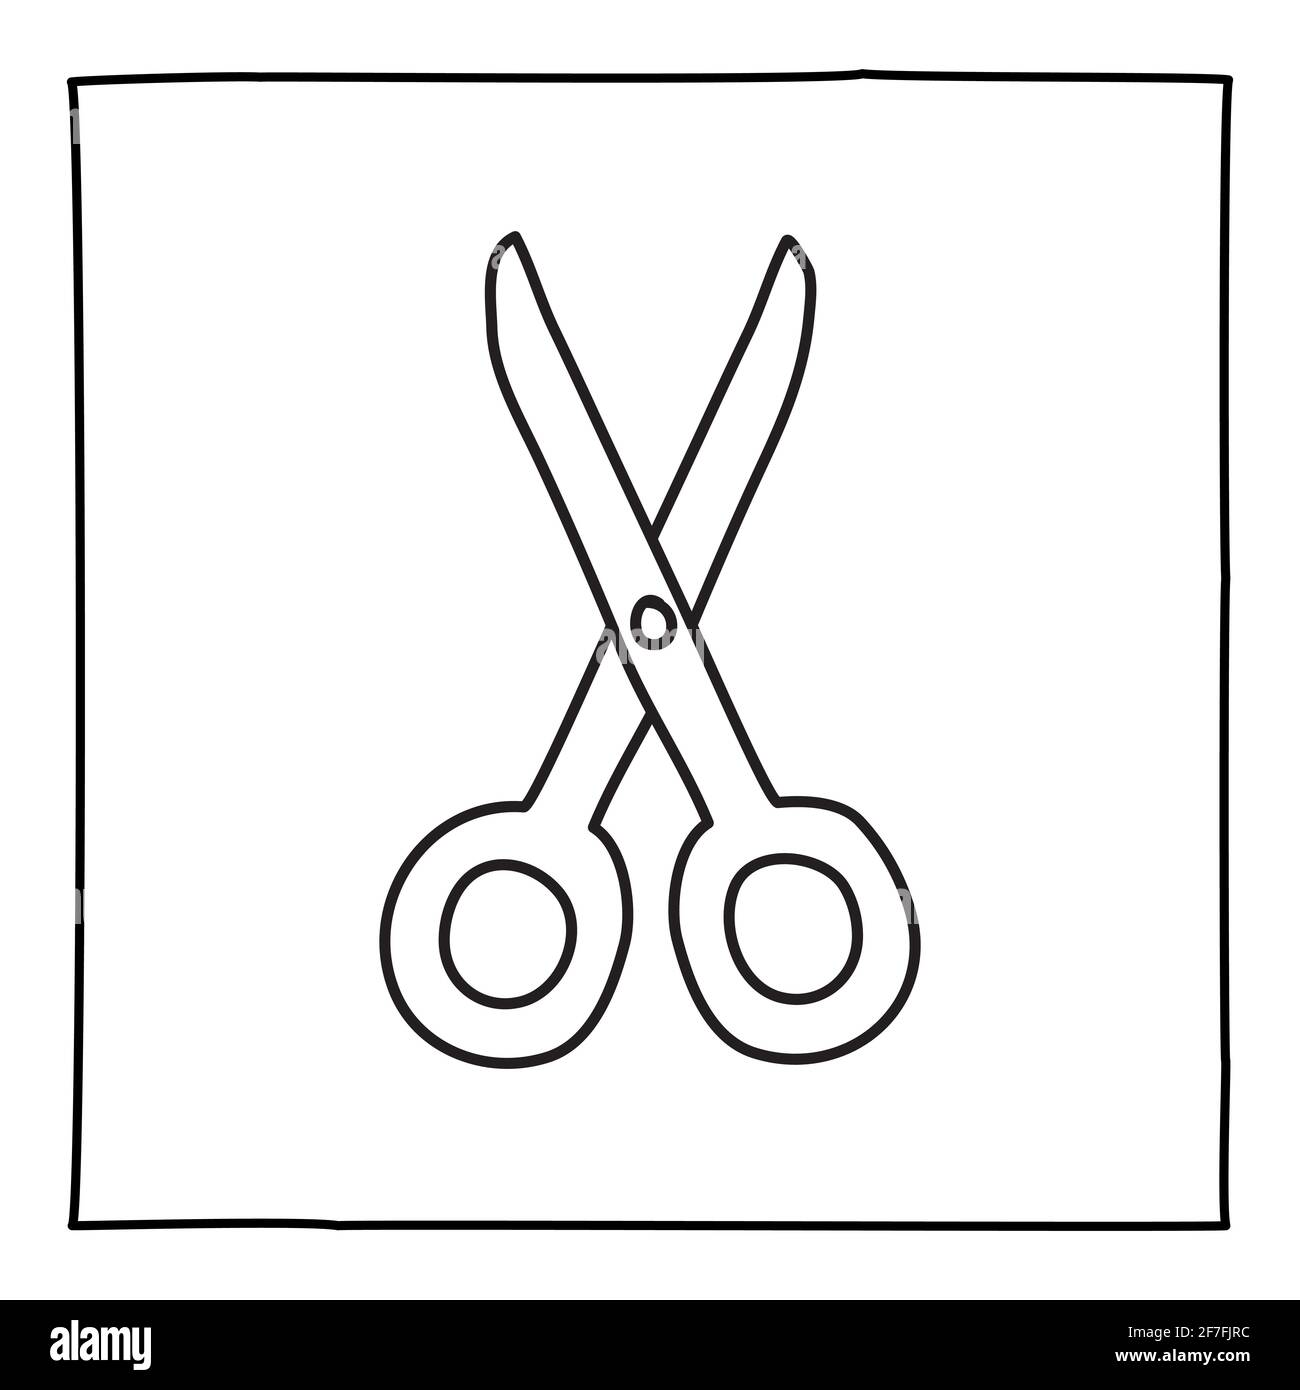 Icône ou logo en forme de ciseaux Doodle, dessiné à la main avec une fine ligne noire. Illustration de Vecteur